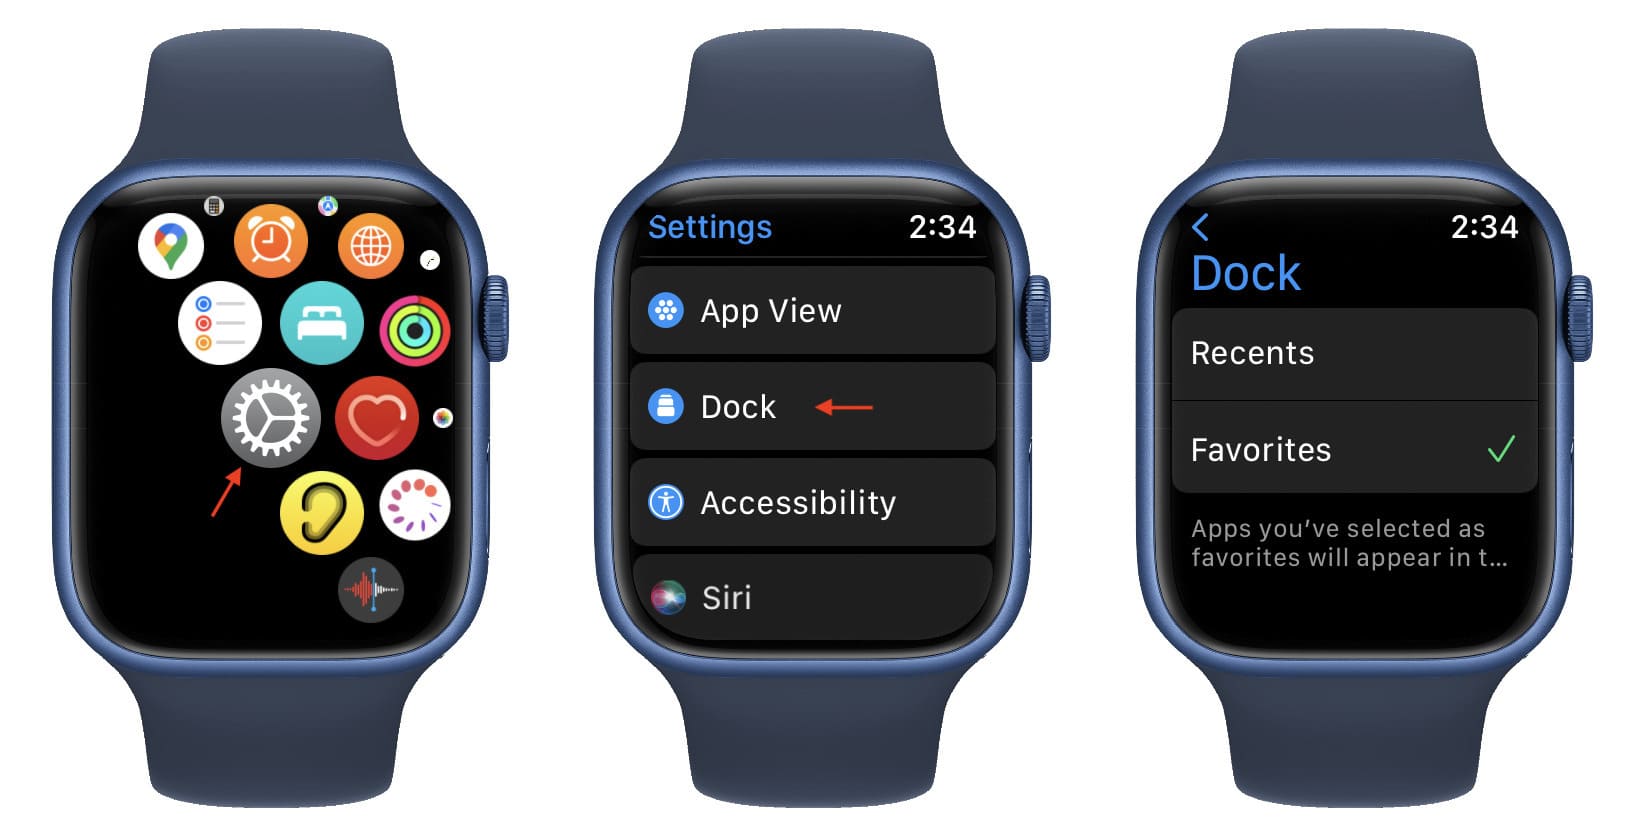 Dock settings Apple Watch